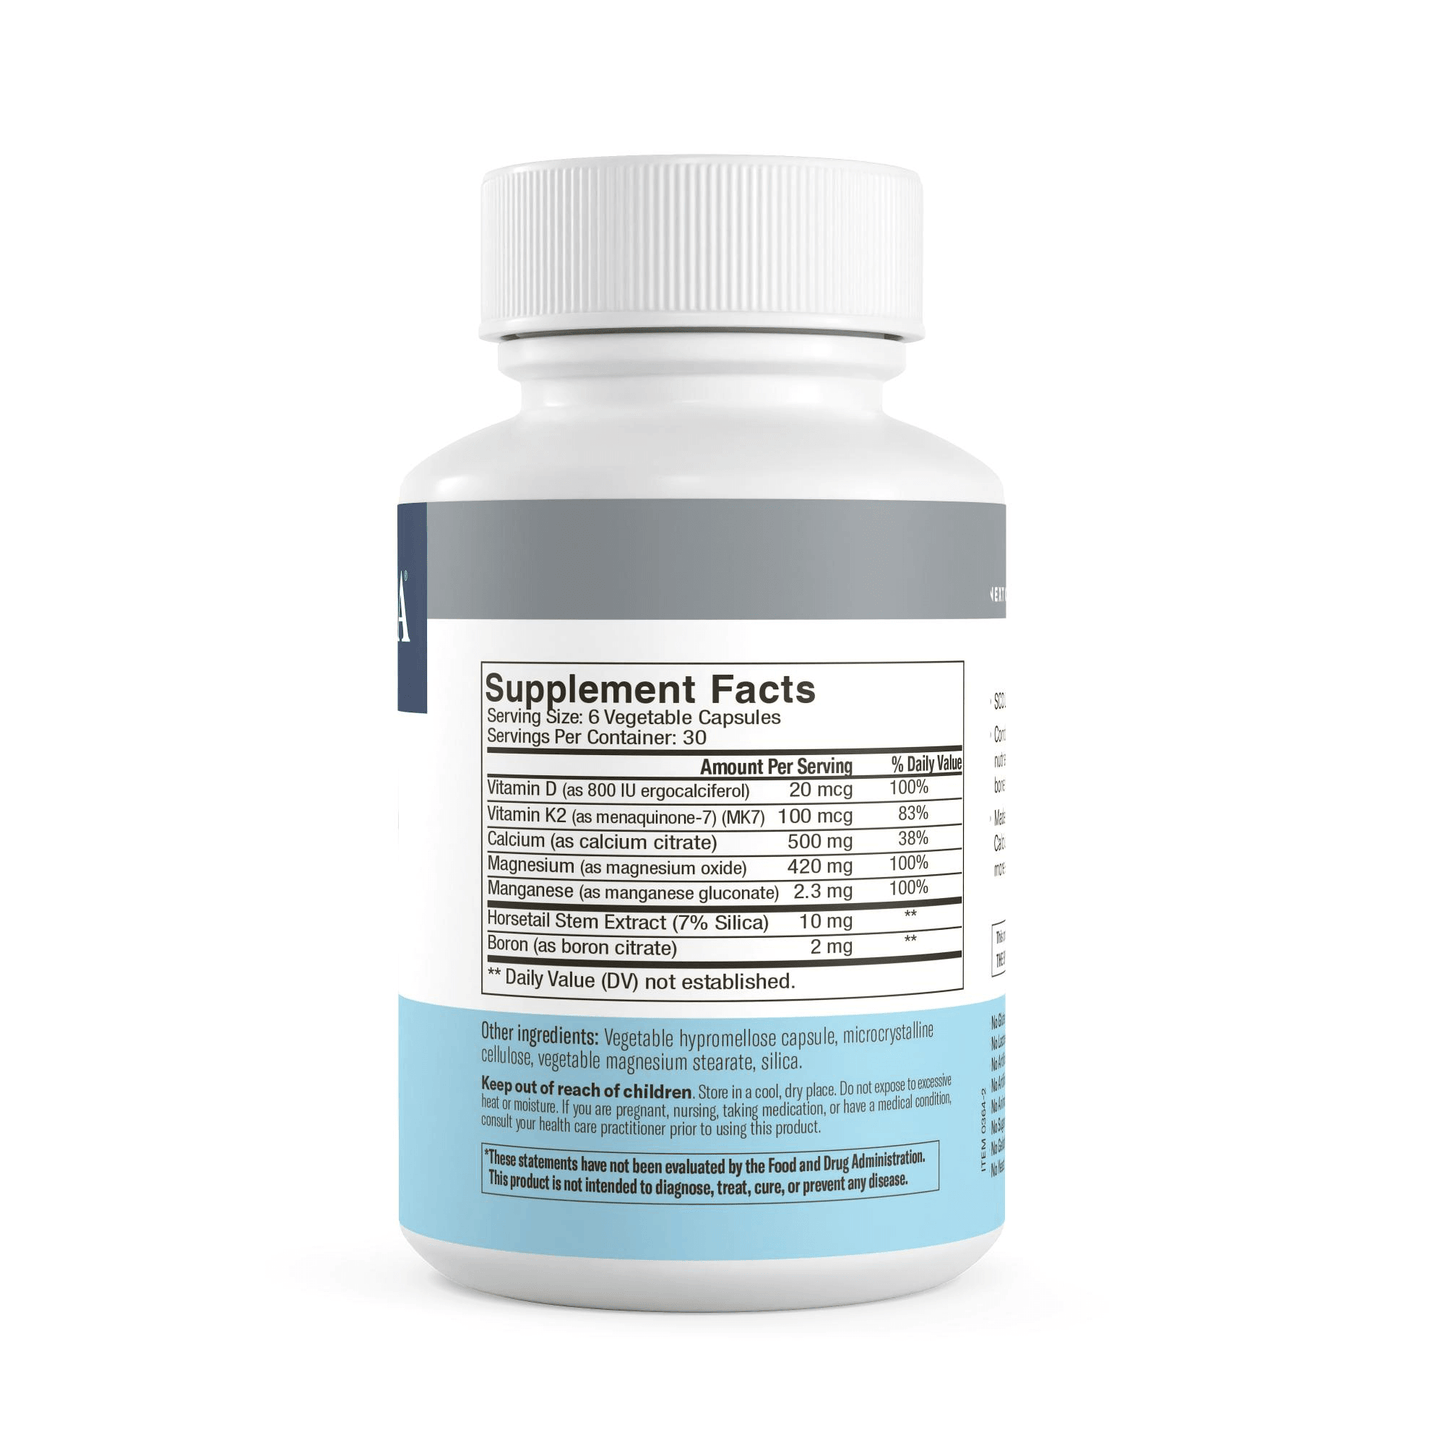 SCD Calcium Complex - 180 Vegetable Capsules